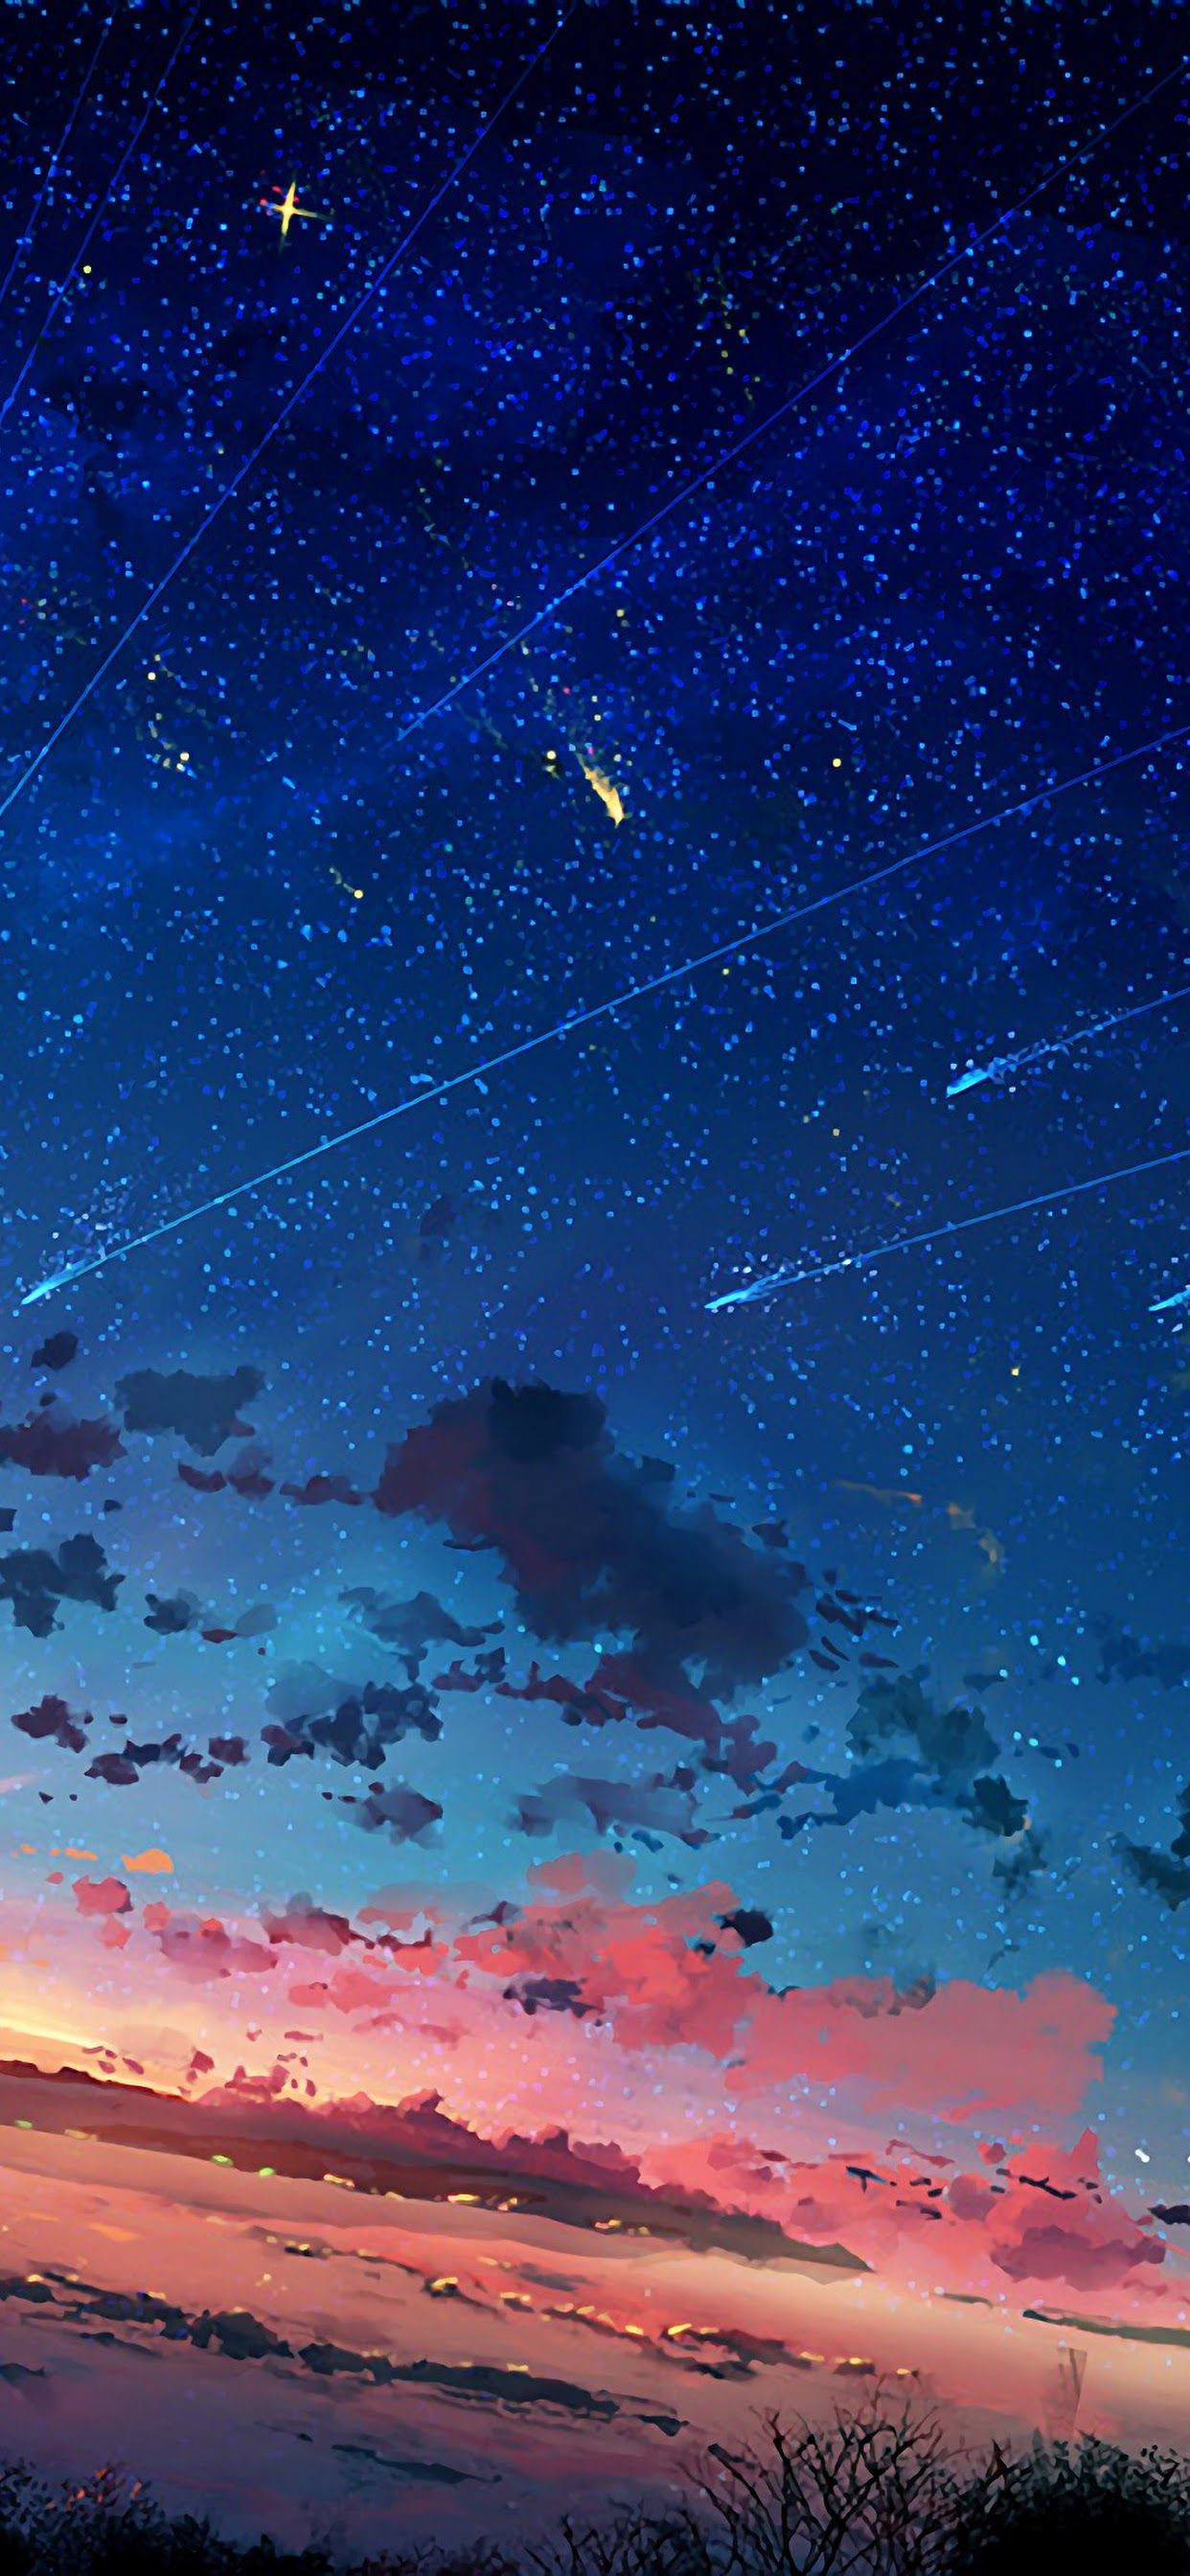 Anime không chỉ hiện diện trong các bộ phim hoạt hình mà còn xuất hiện trong những bức tranh tuyệt đẹp của Anime Sky. Tận hưởng tầm nhìn đầy mê hoặc của các bức tranh này, những bức tranh đầy màu sắc và phong cách. Hãy xem ngay!